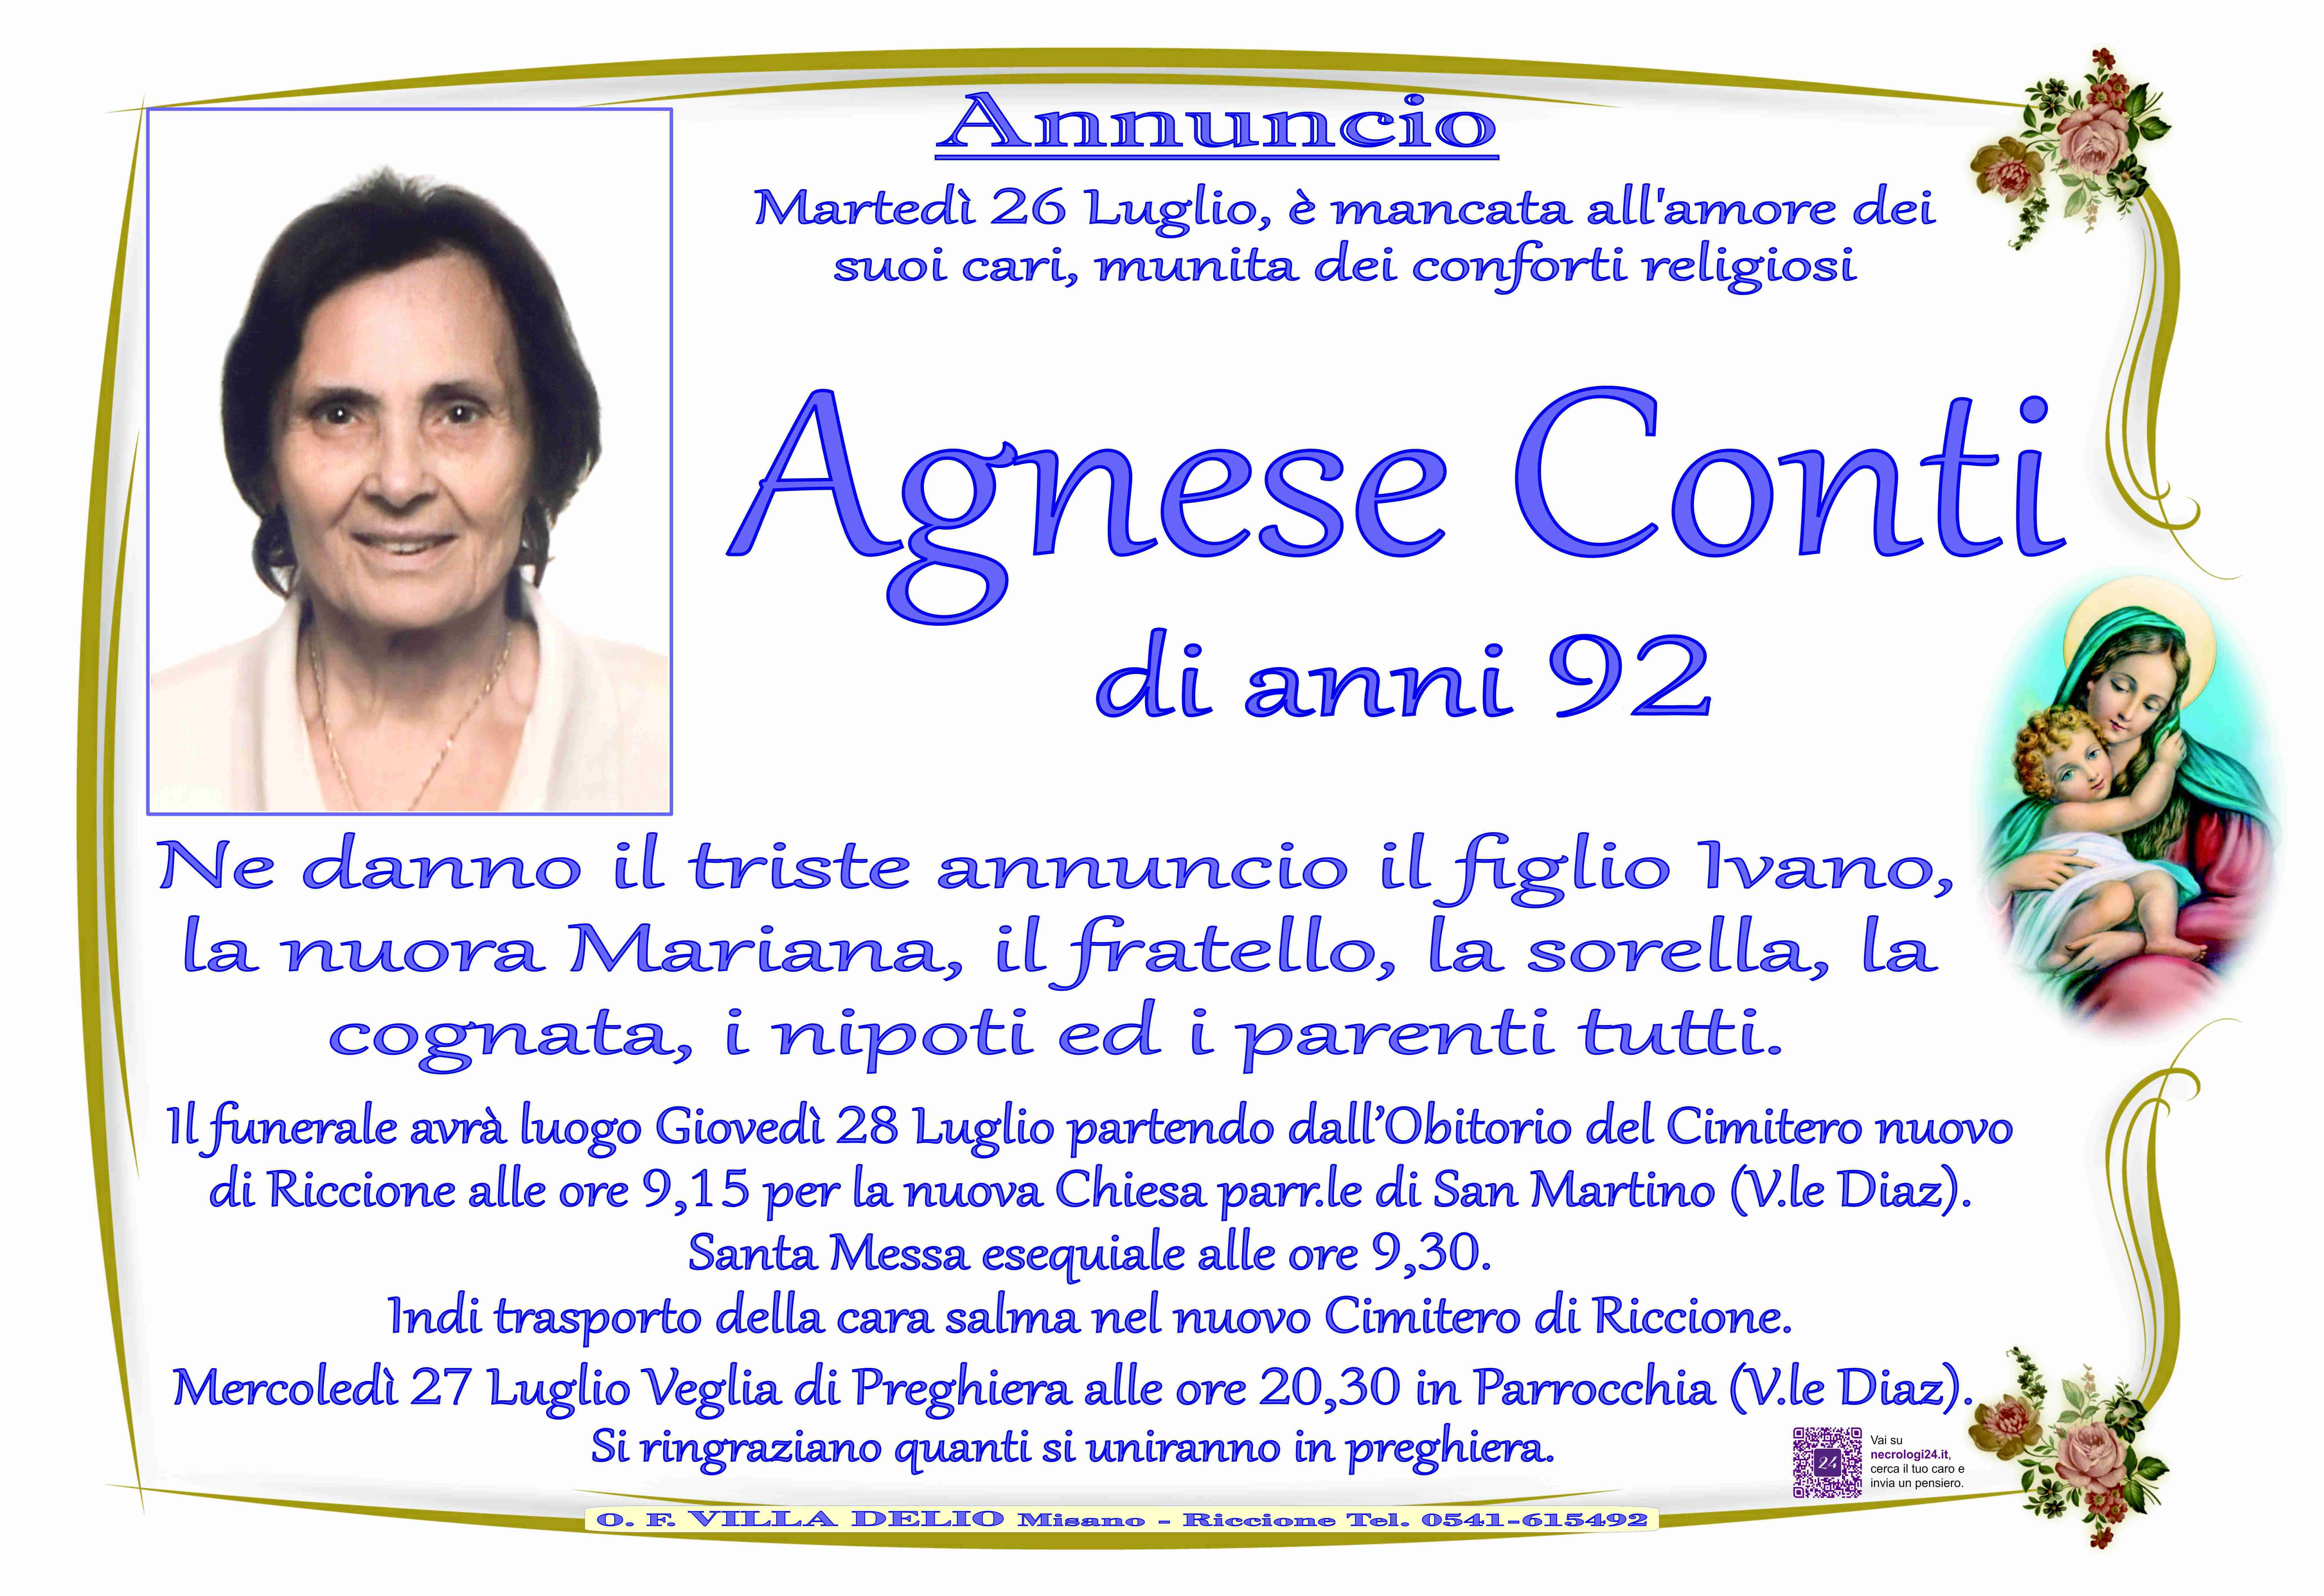 Agnese Conti